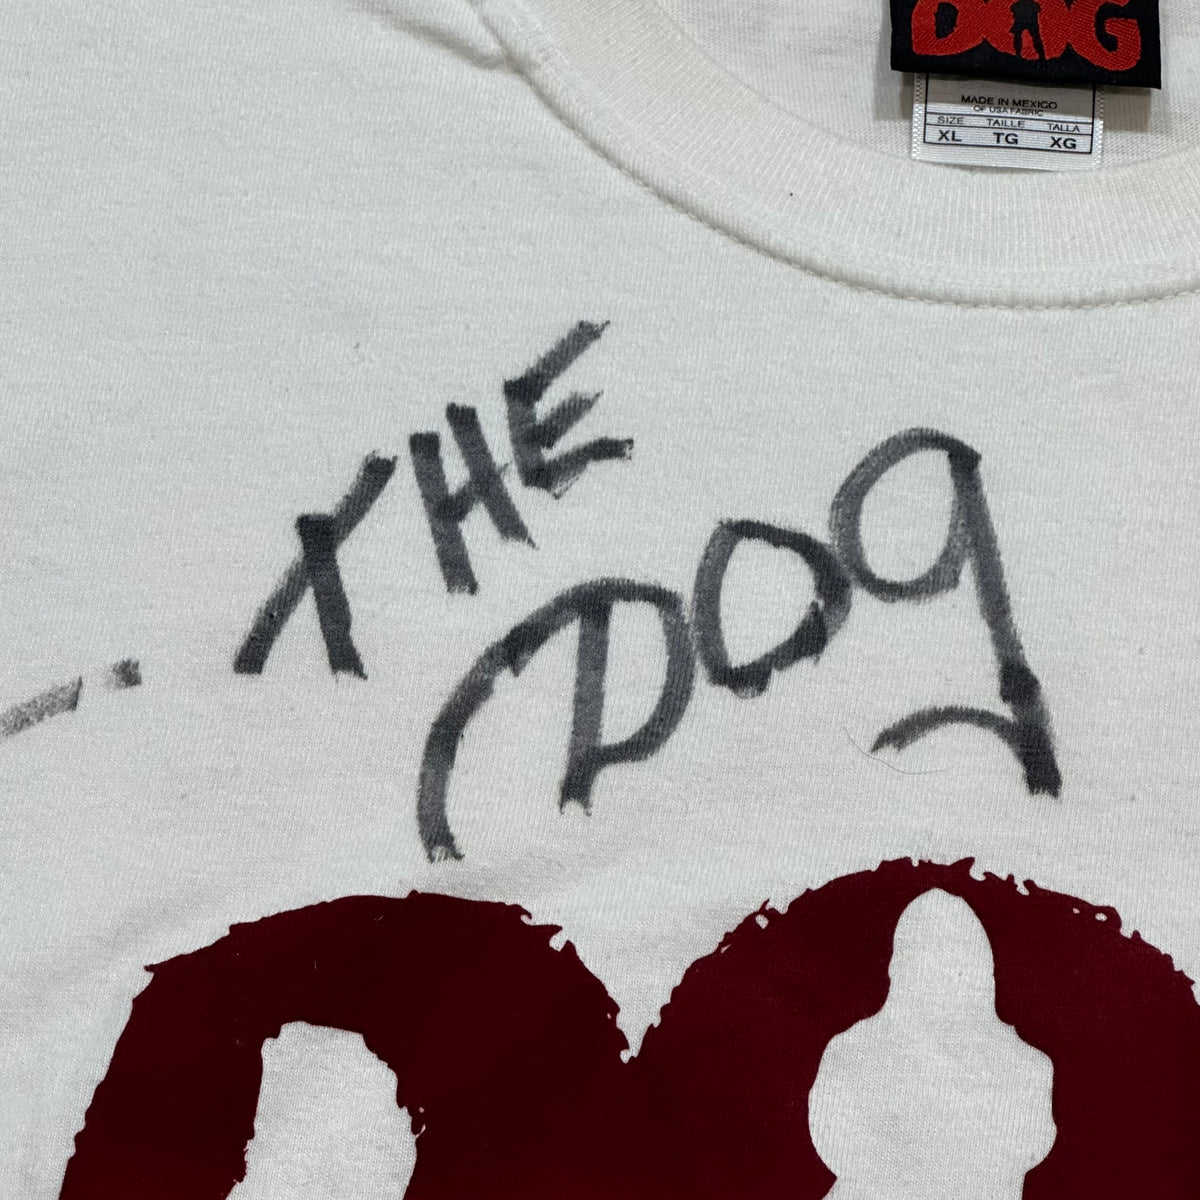 Da Kine Bail Bonds Dog the Bounty Hunter team crew signed t-shirt